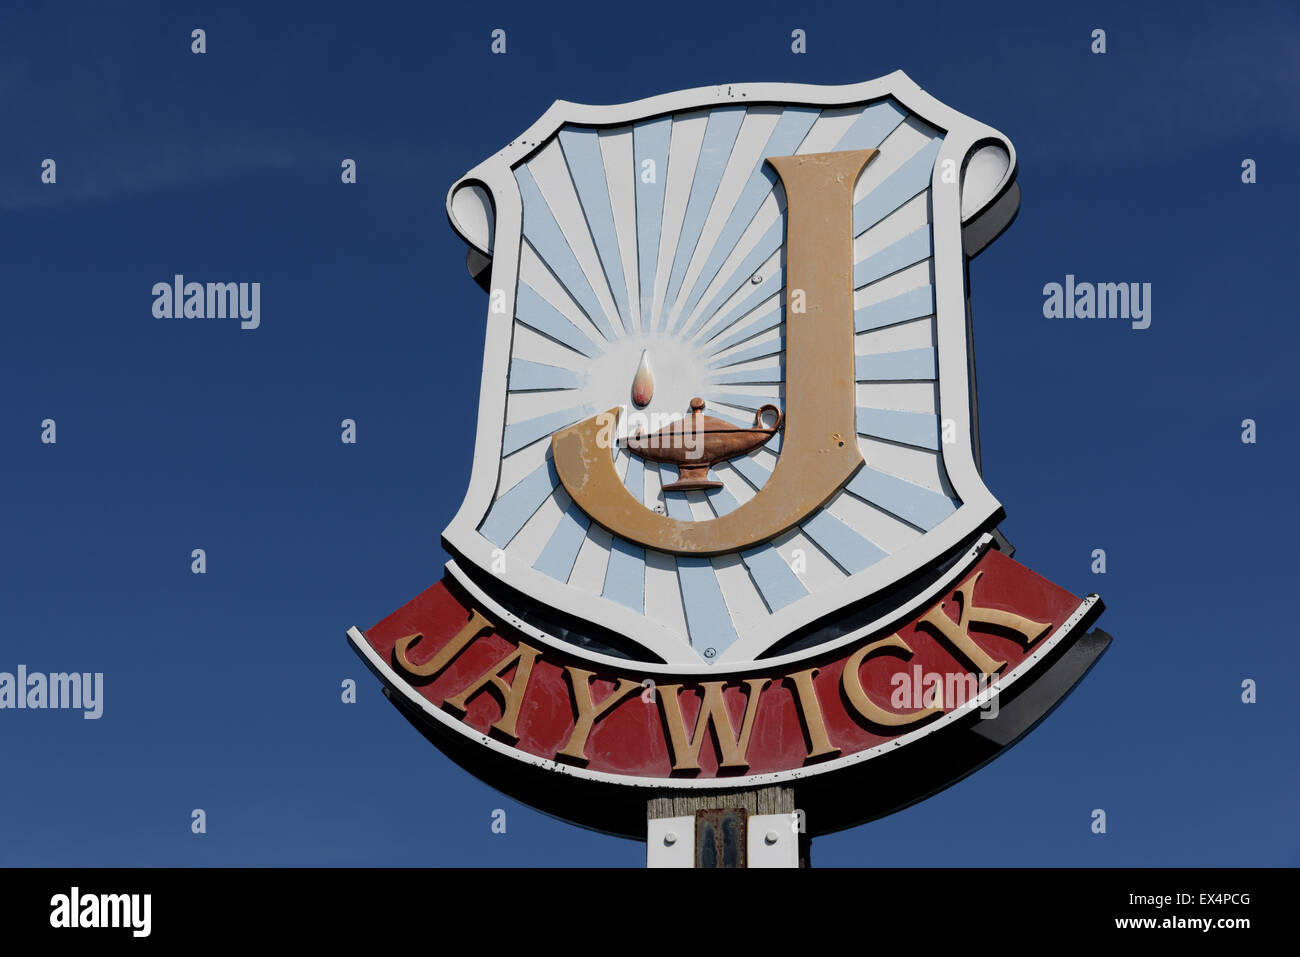 Stadt Zeichen für Jaywick in Essex, eine der ärmsten Städte des Vereinigten Königreichs Stockfoto